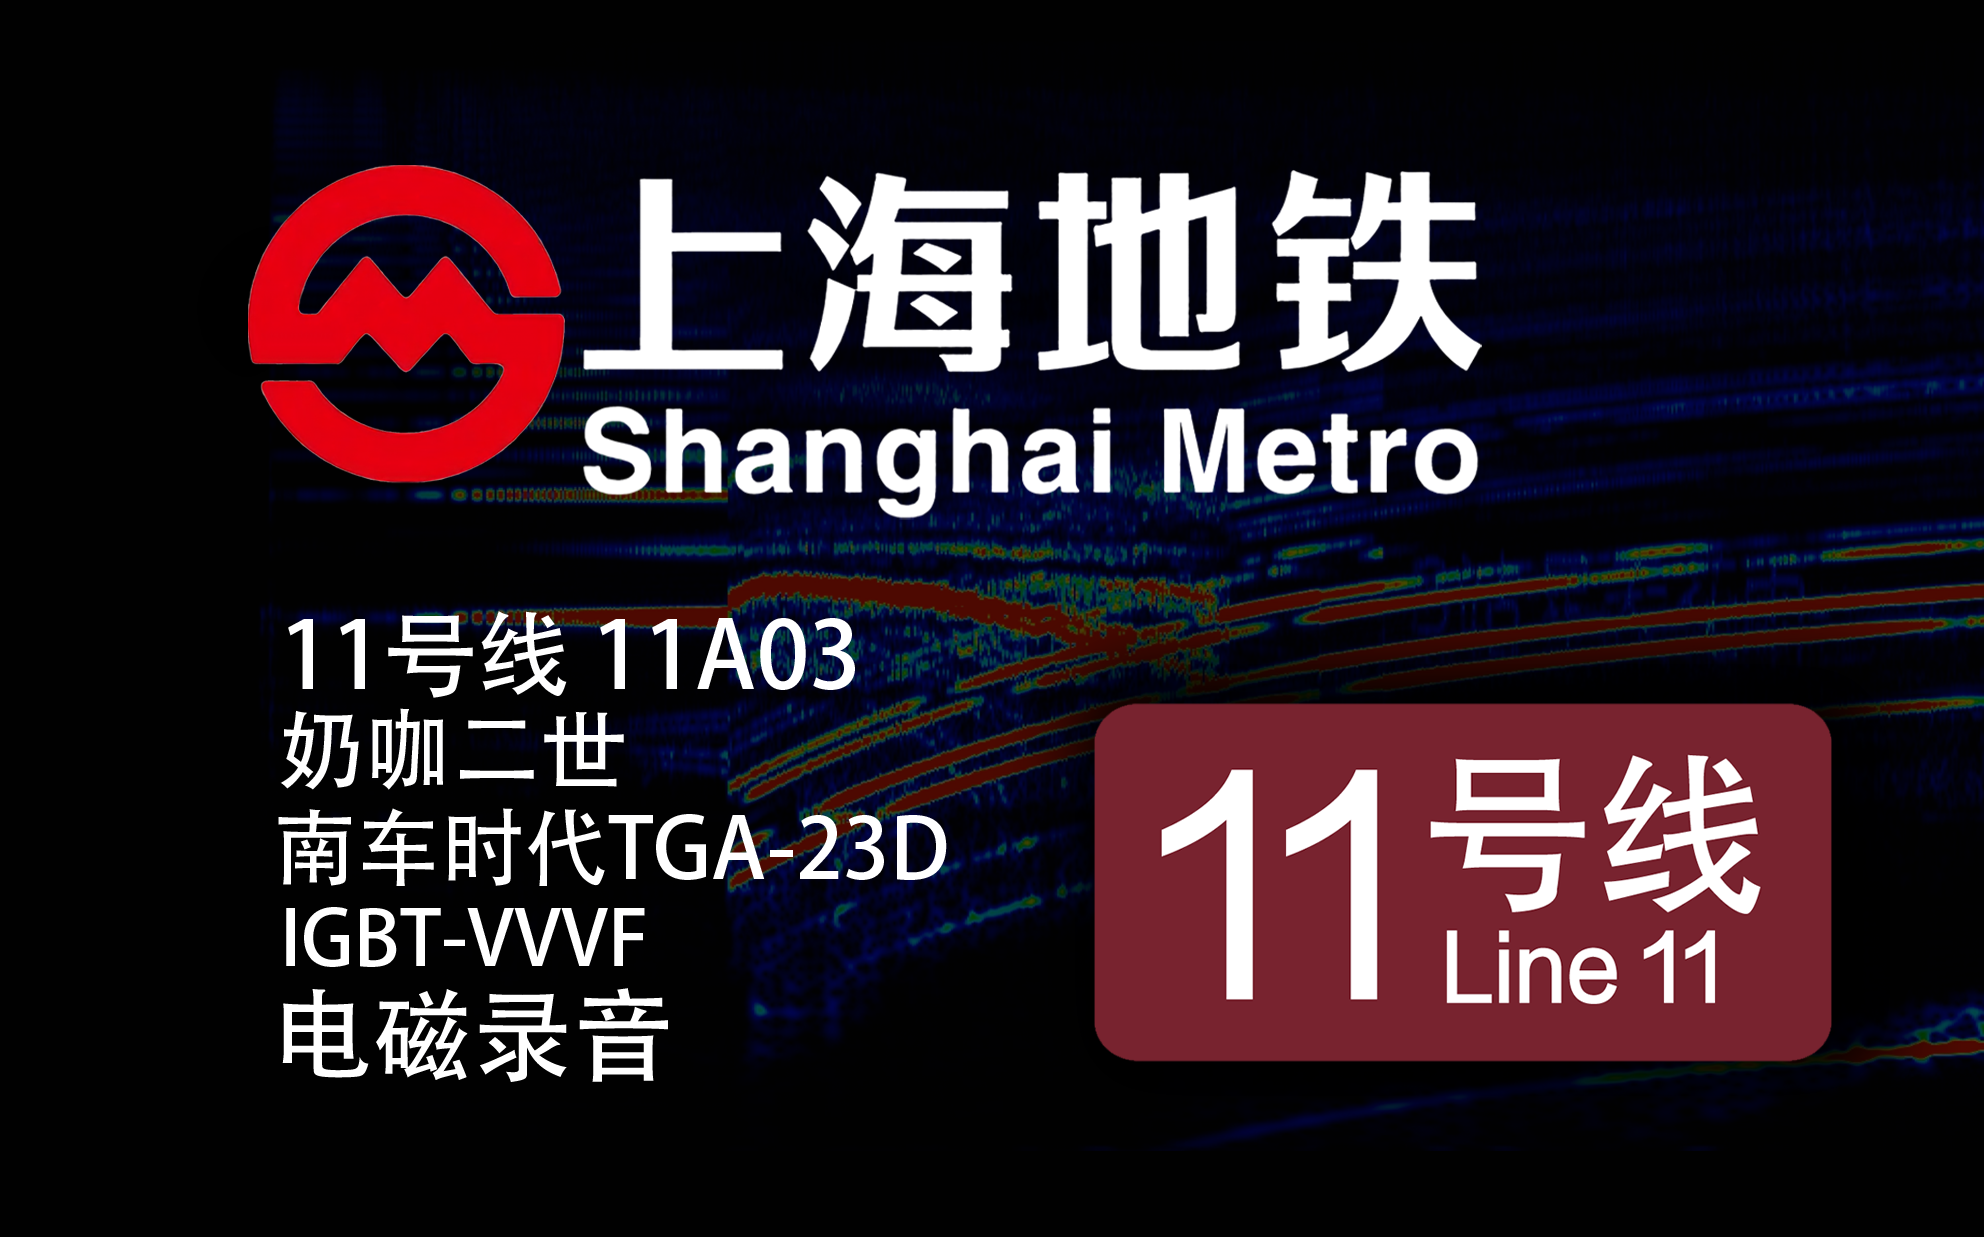 【上海地铁】11号线-11A03-奶咖二世 南车时代 TGA-23D IGBT-VVVF 电磁录音